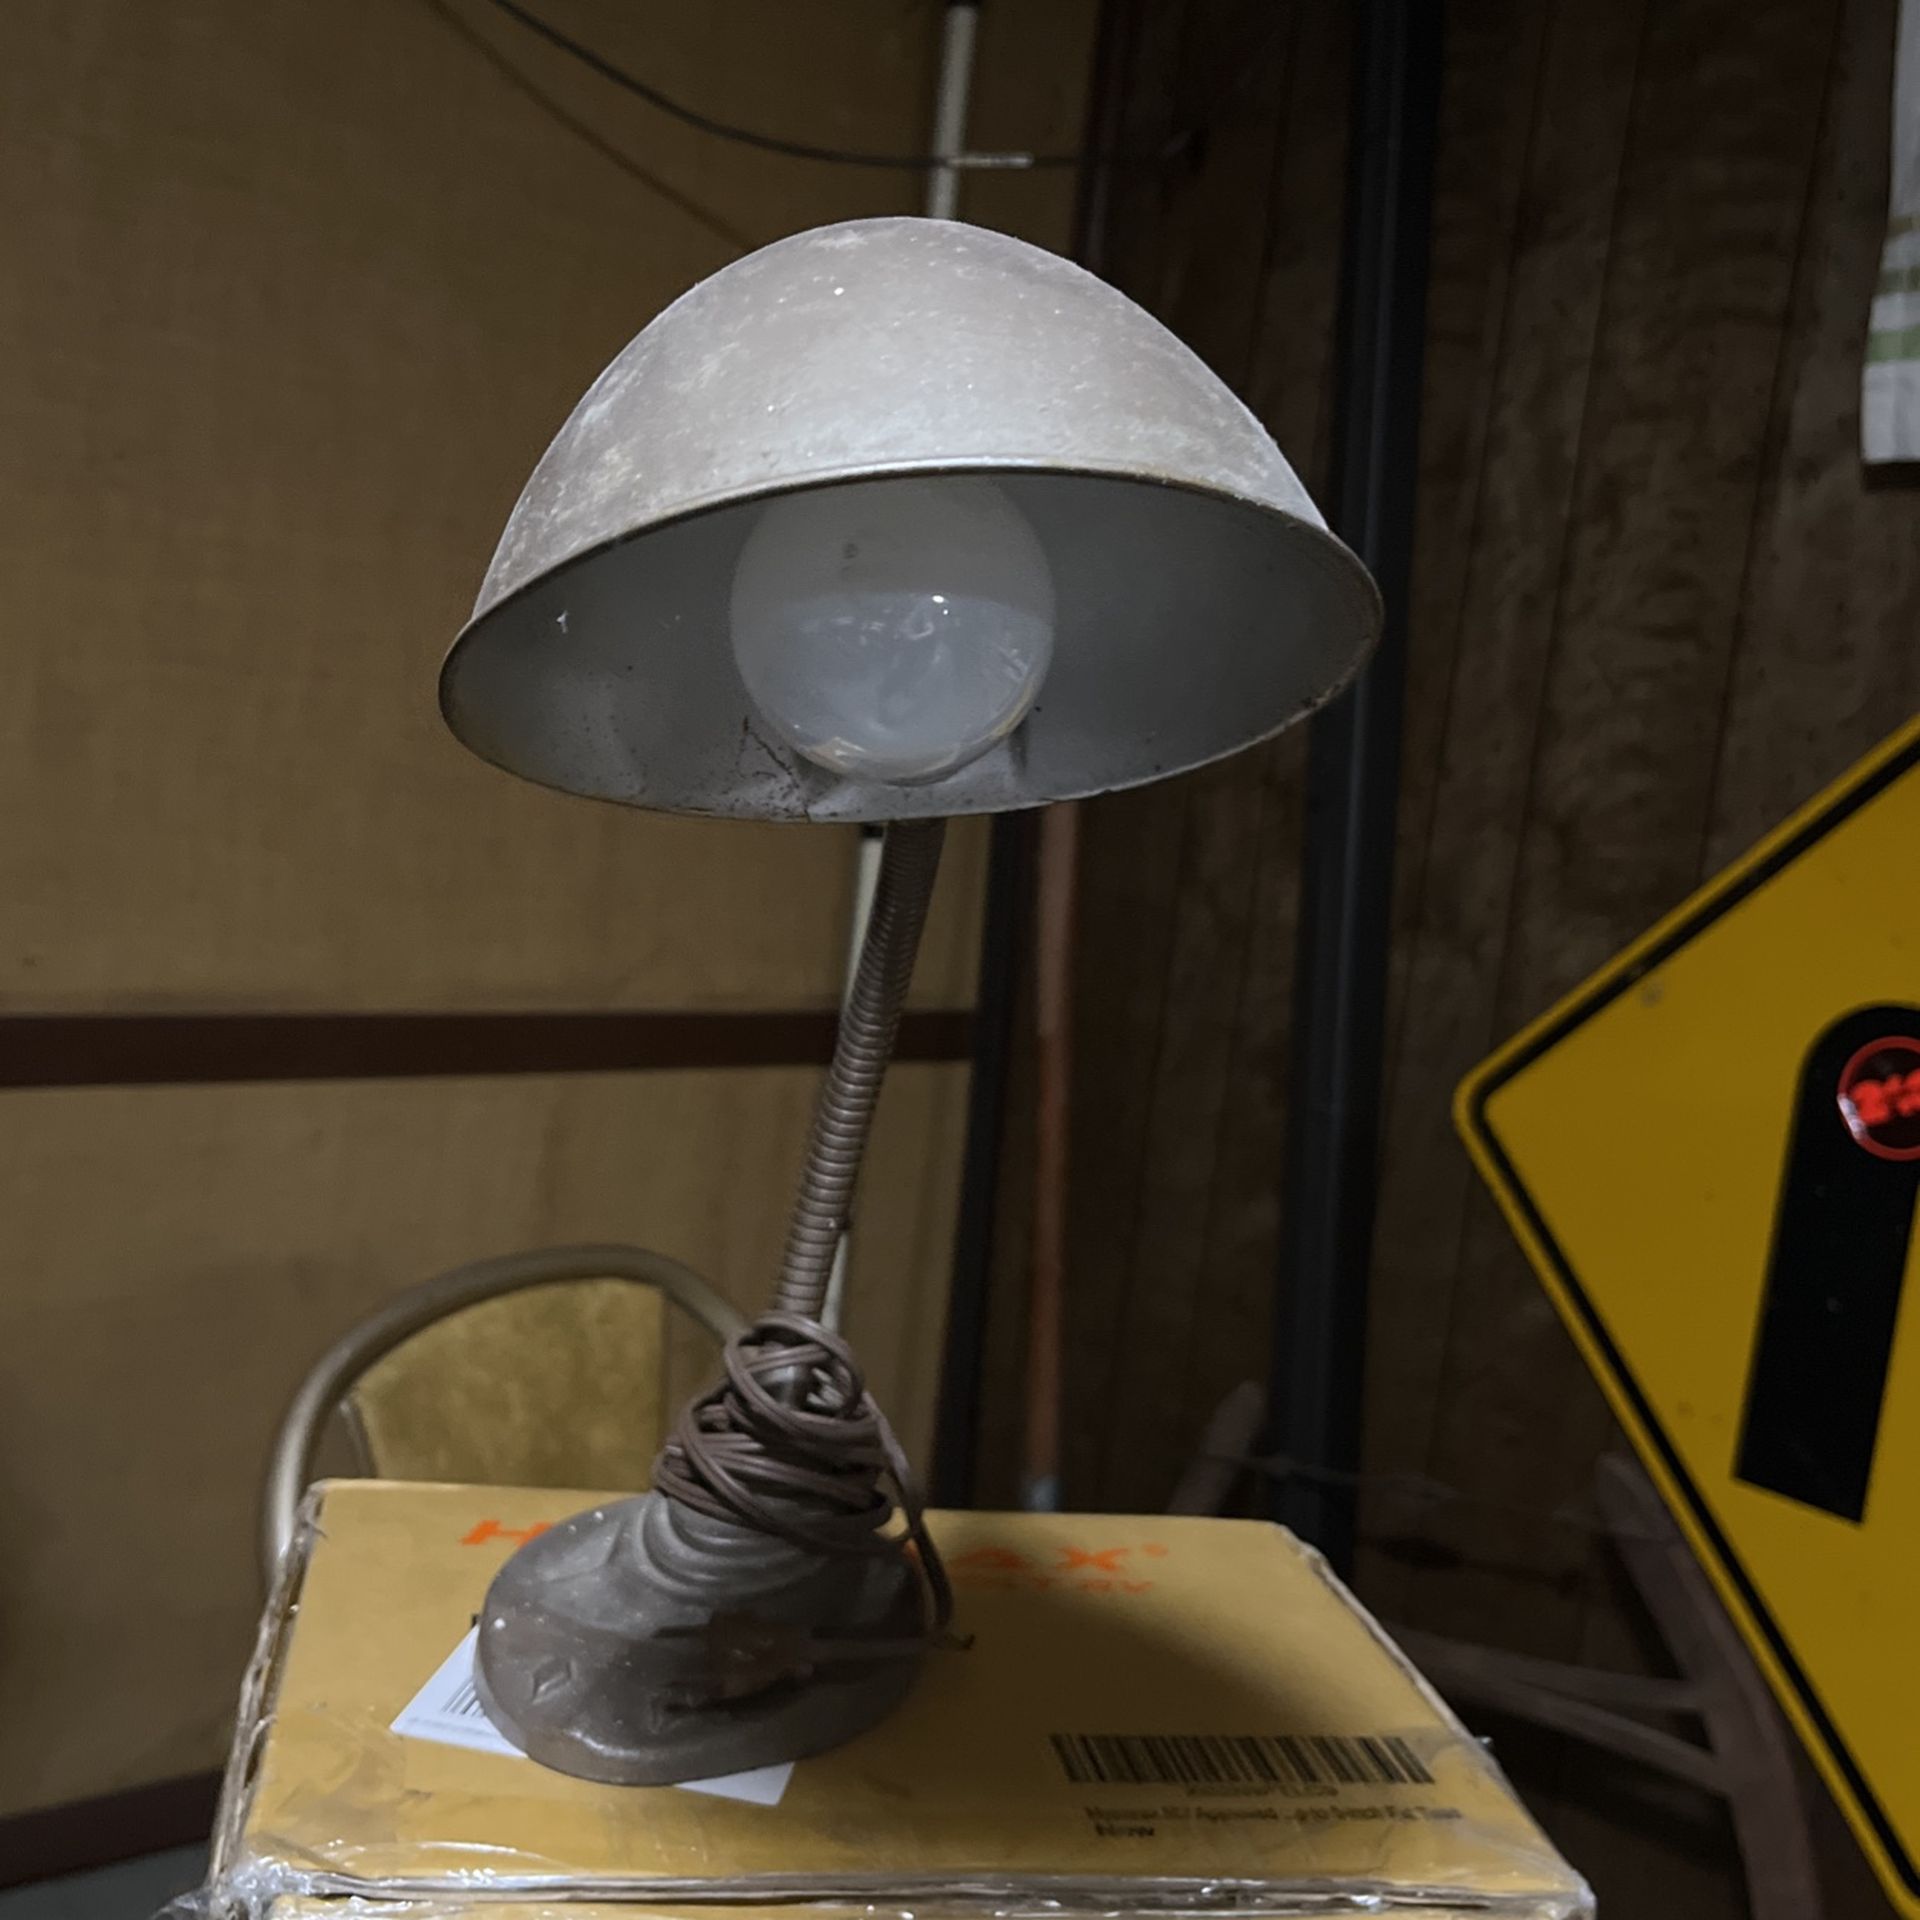 Vintage Desk Lamp 